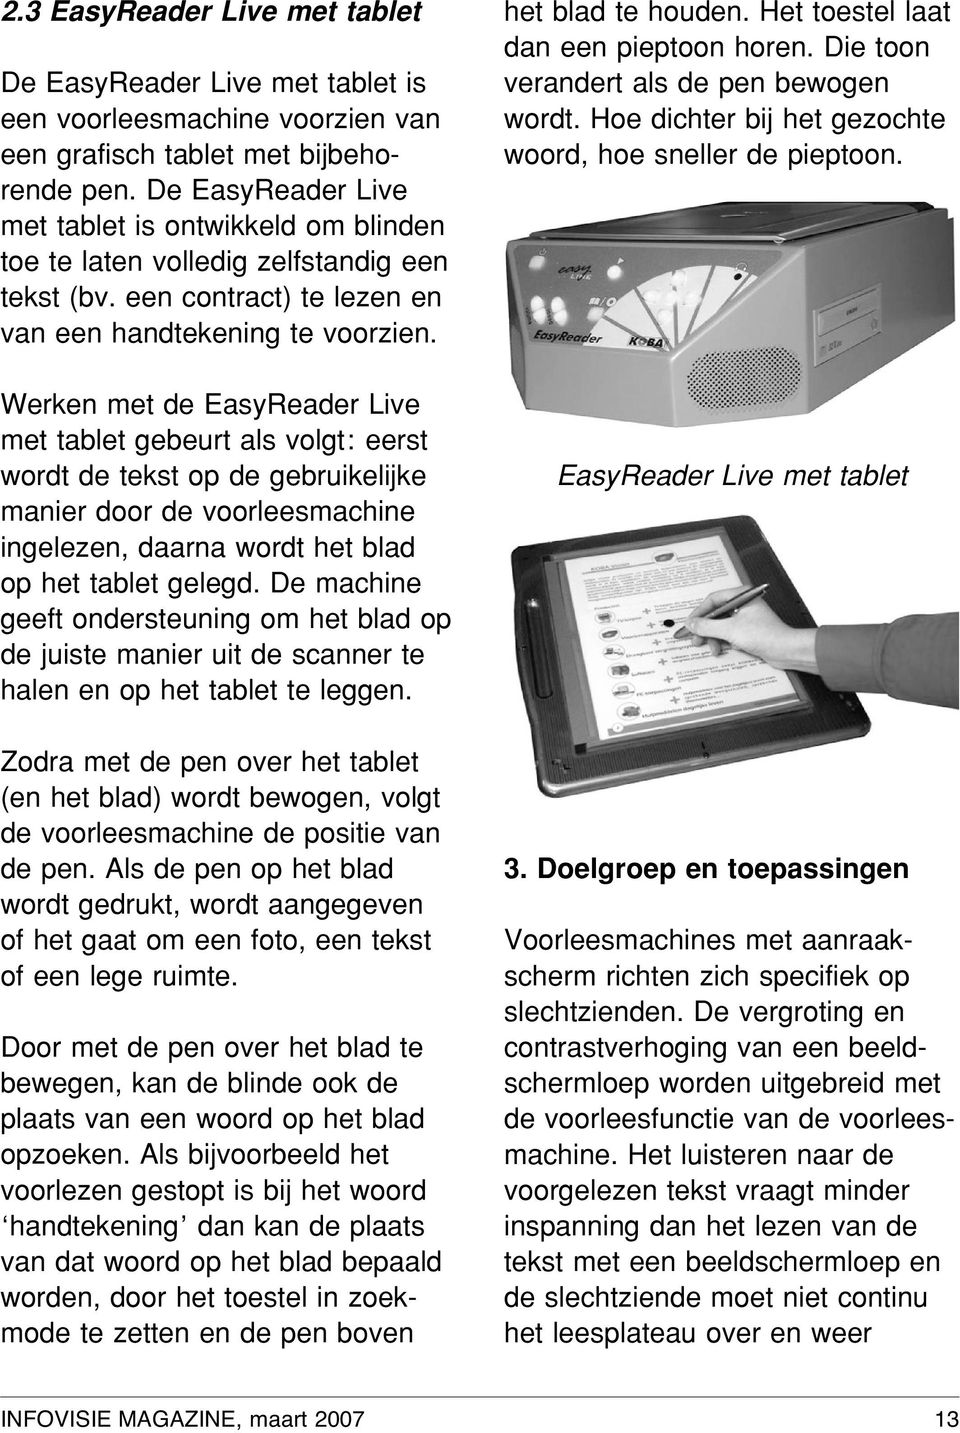 Werken met de EasyReader Live met tablet gebeurt als volgt: eerst wordt de tekst op de gebruikelijke manier door de voorleesmachine ingelezen, daarna wordt het blad op het tablet gelegd.